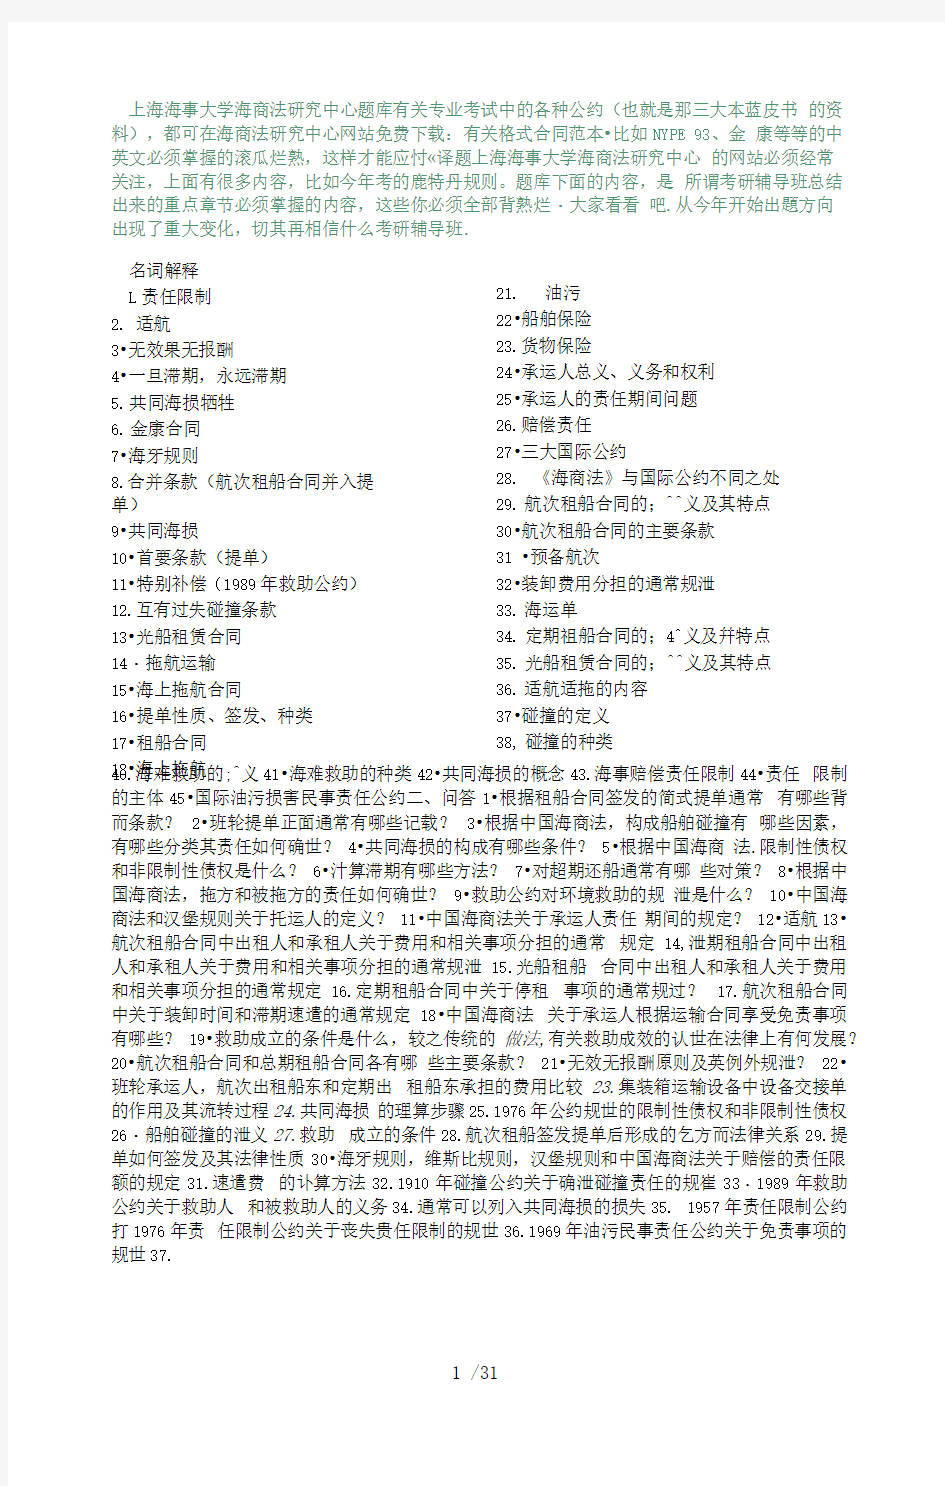 上海海事大学海商法研究中心题库有关专业考试中的各种公约